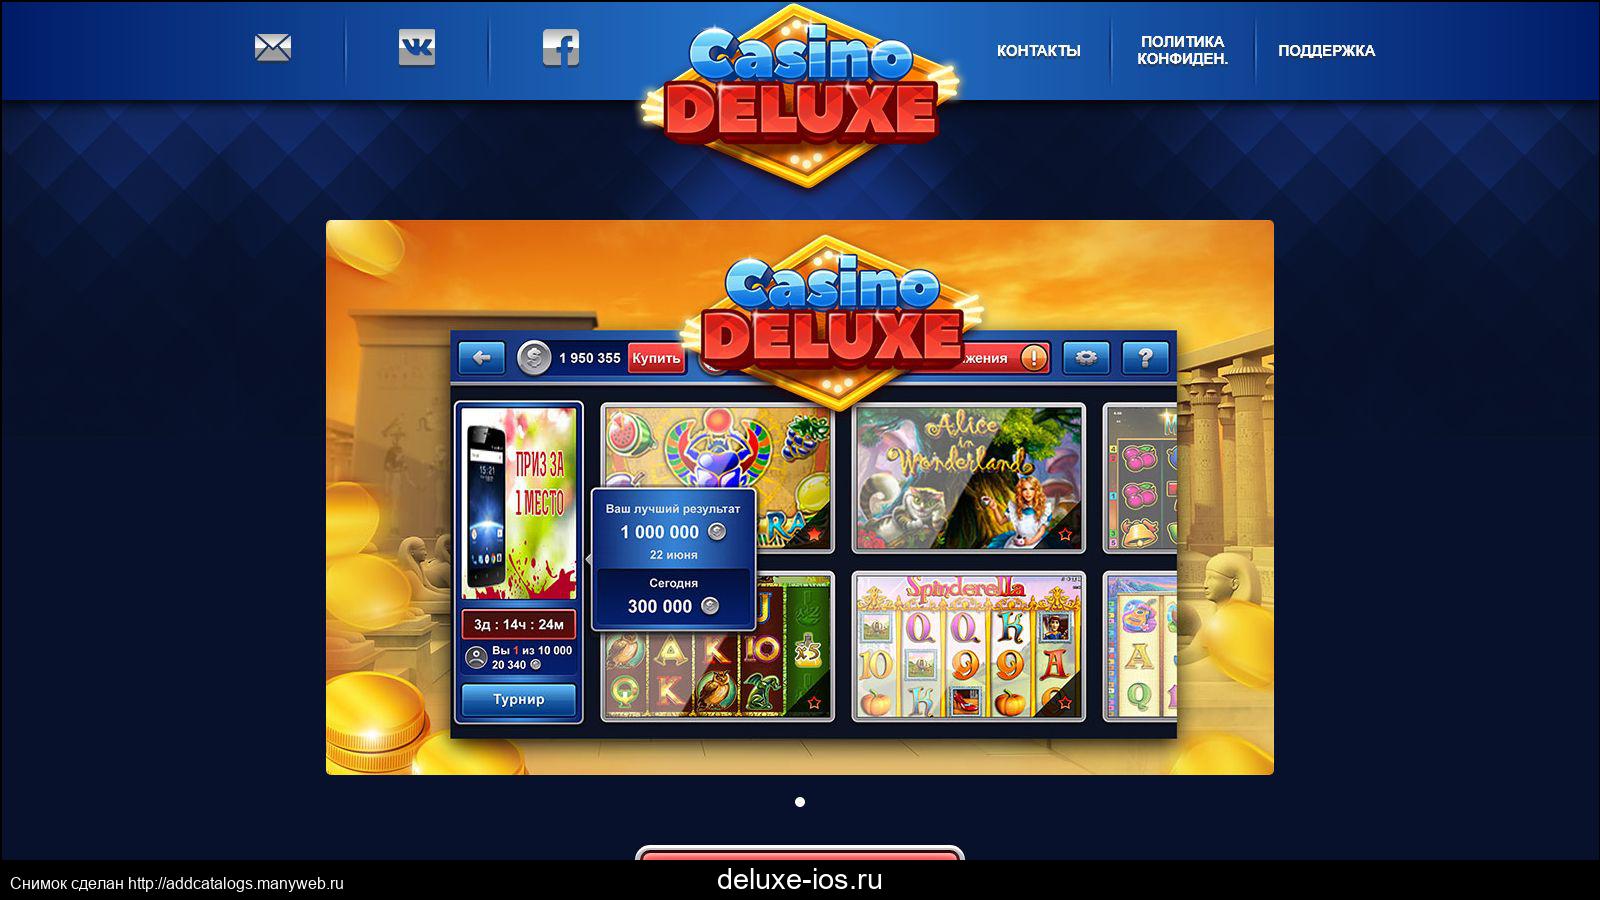 Web slots casino ru cool air. Казино Делюкс личный кабинет. Сайтбайсайт Делюкс.